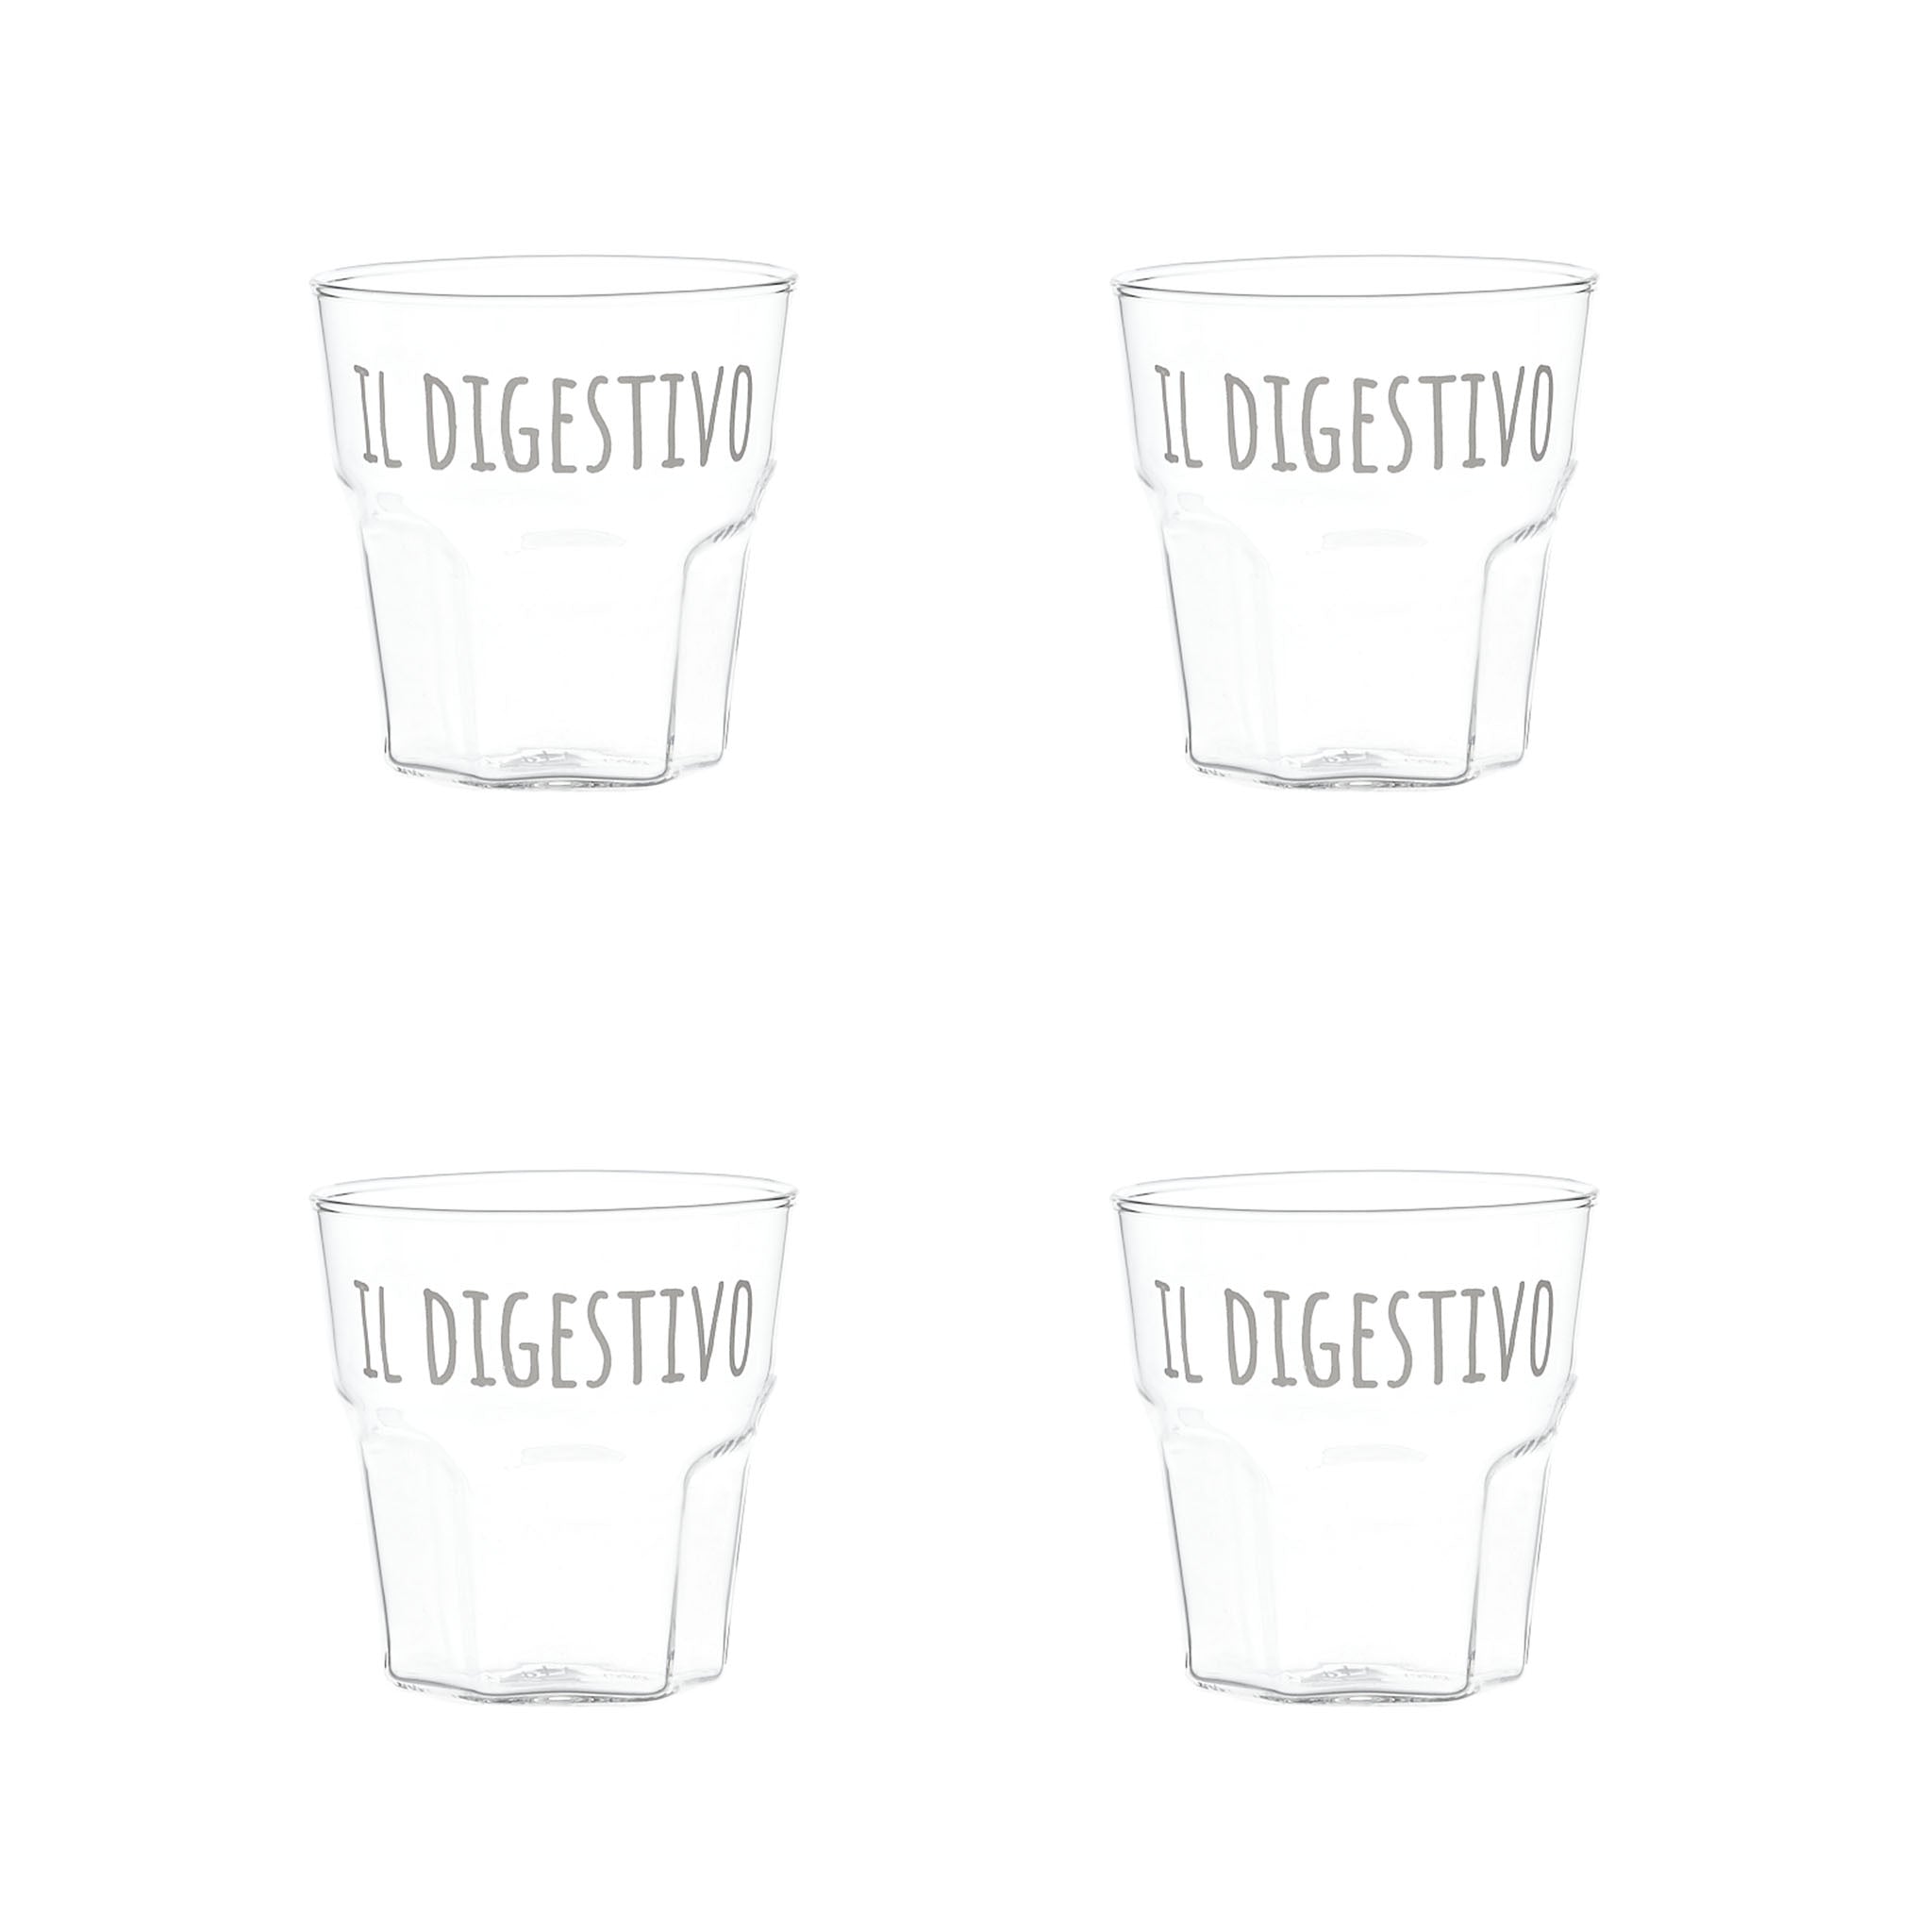 Liquor Glass "Il Digestivo" in White - Set of 4